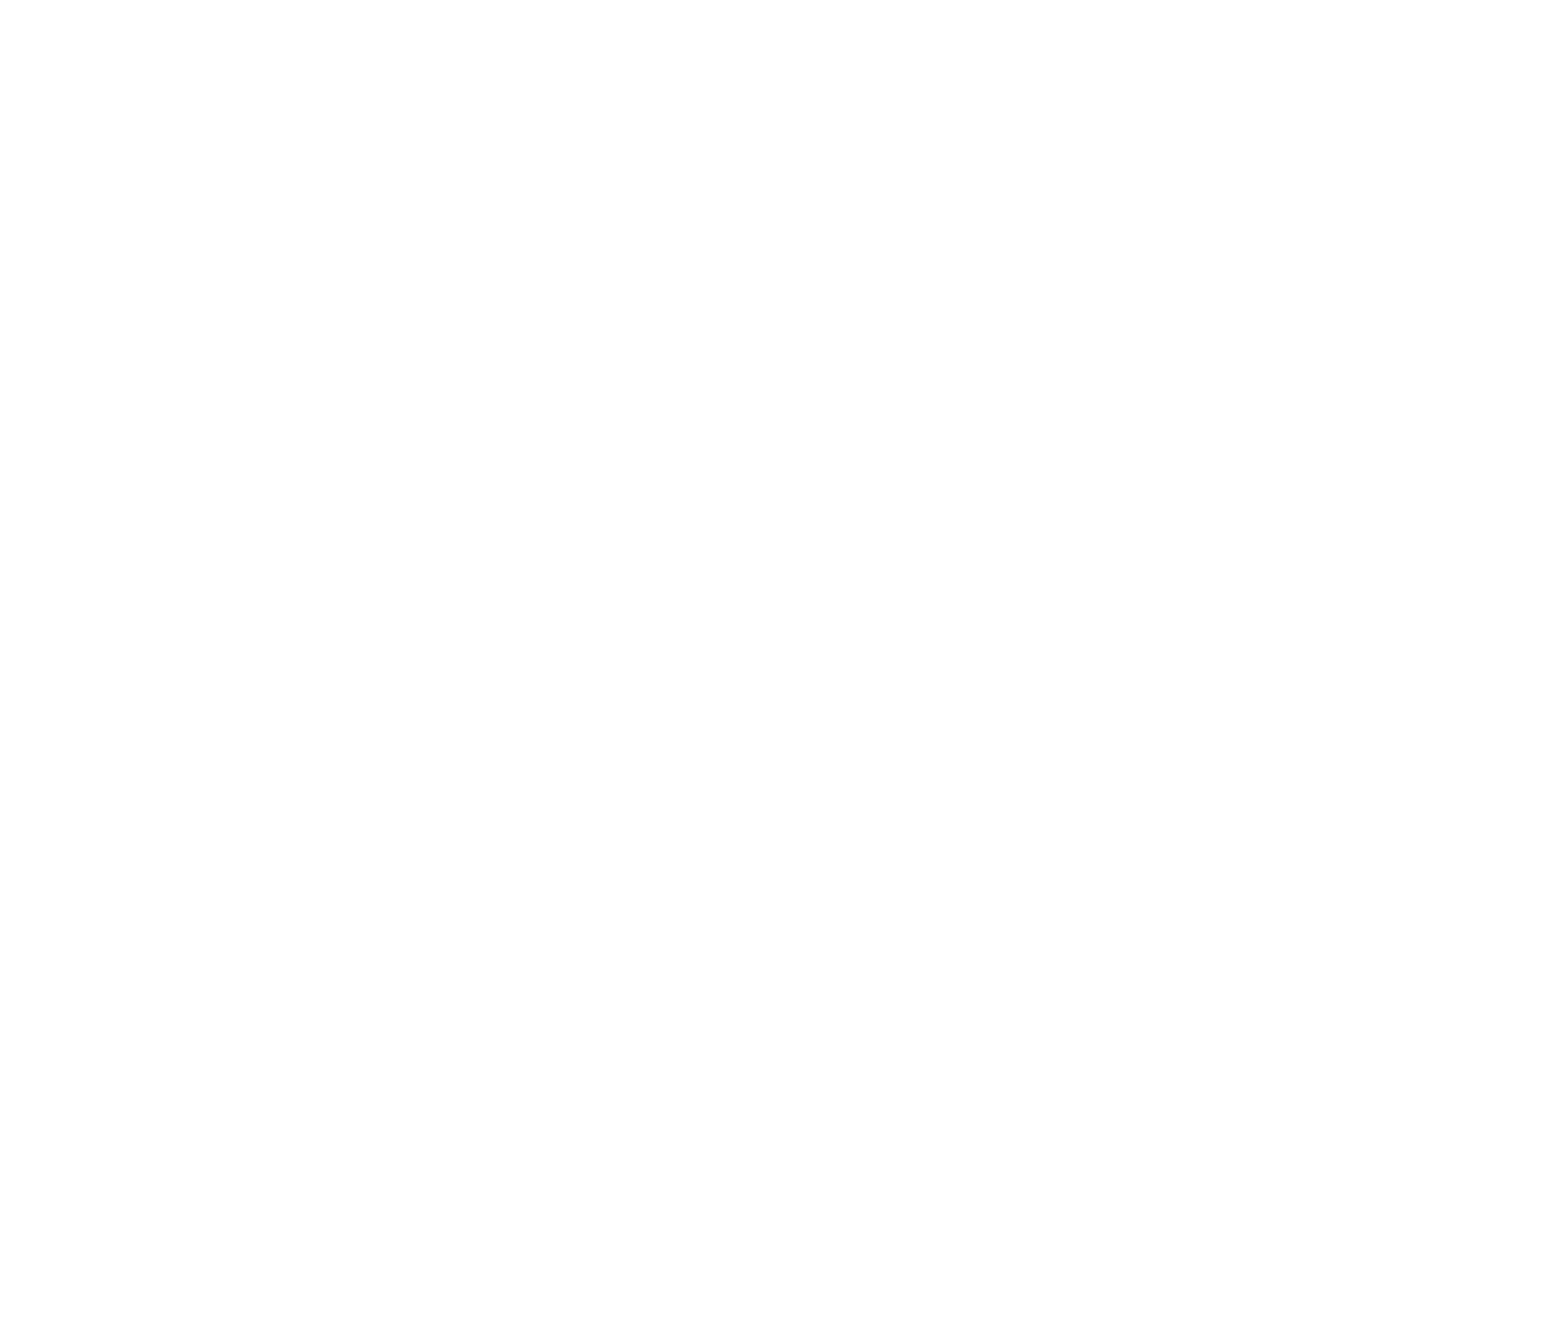 Quicklogic logo pour fonds sombres (PNG transparent)